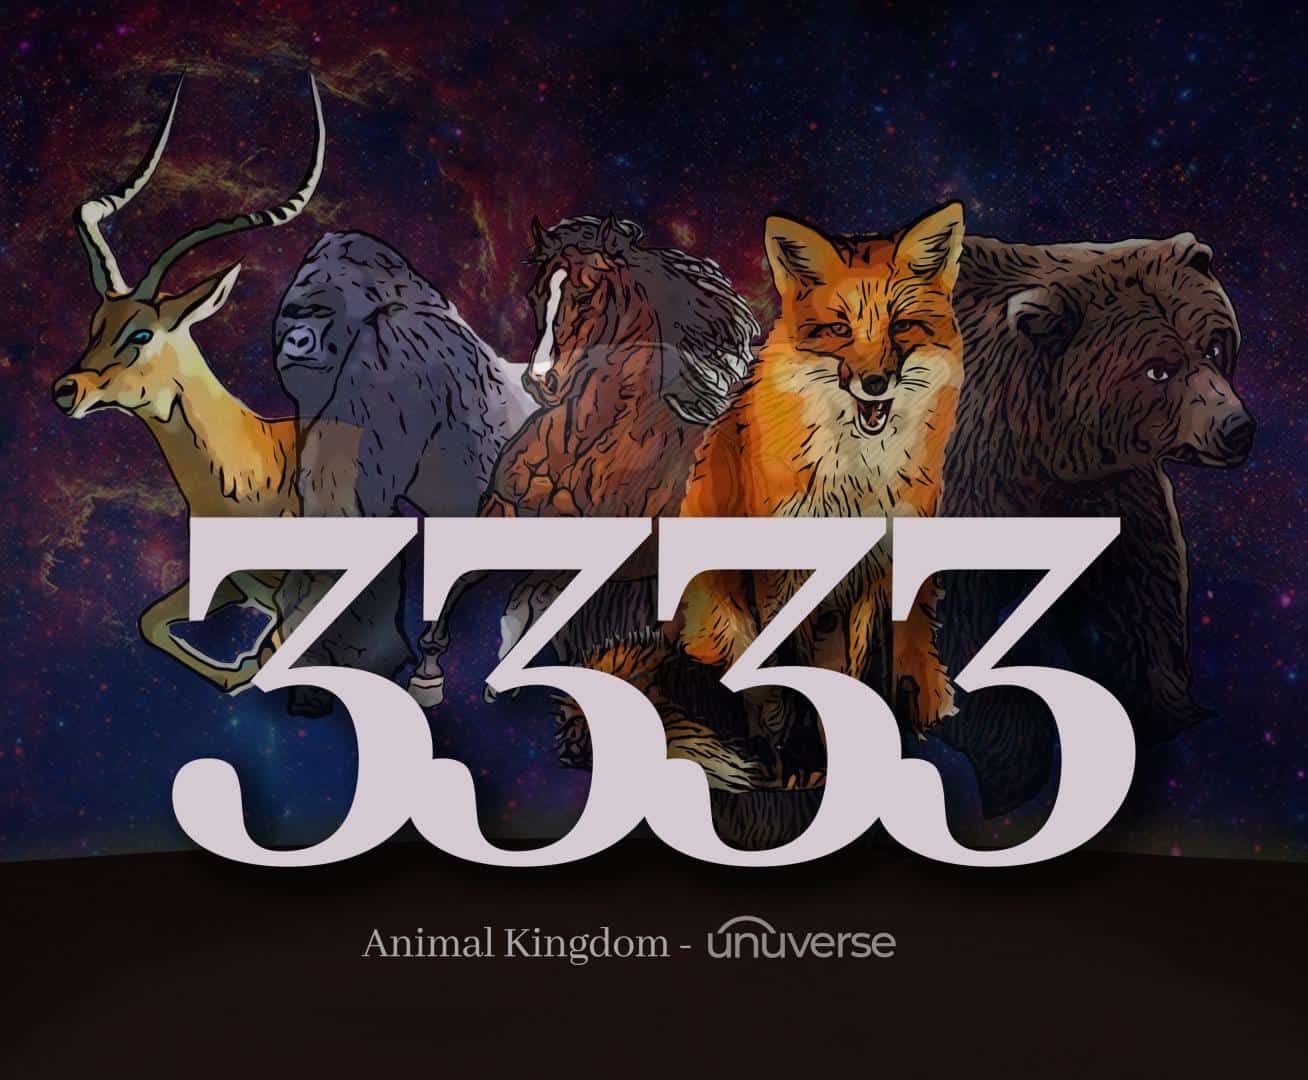 Unuverse bringt 333 Animal Kingdom NFT Collection auf den Markt